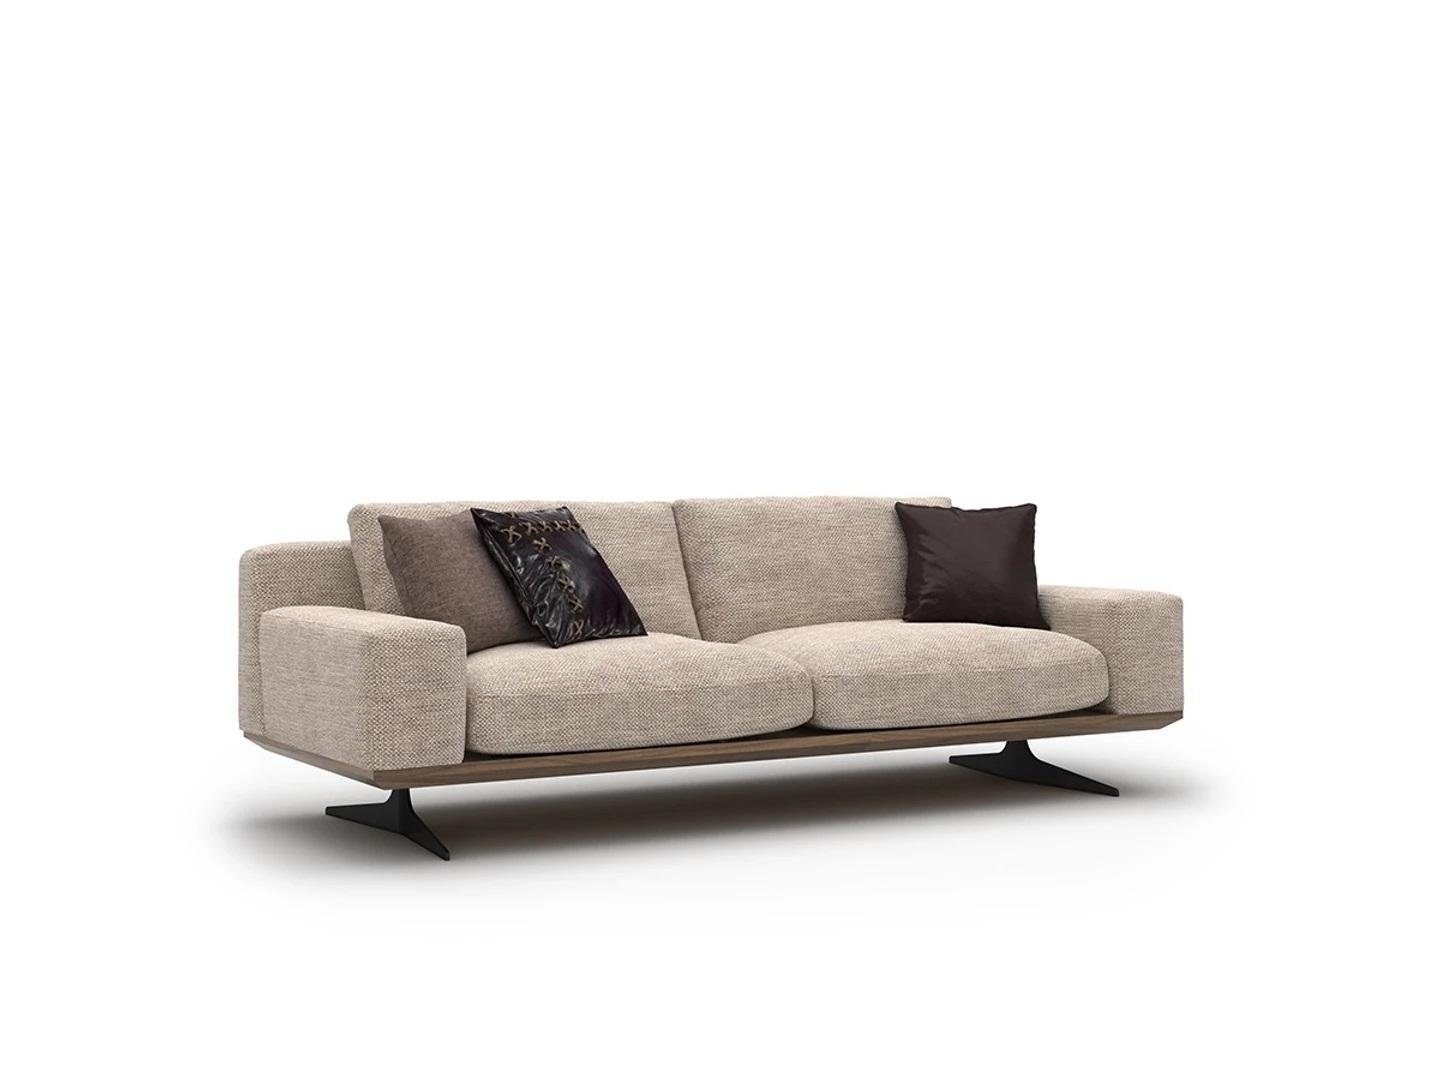 JVmoebel Sofa Luxus Sofa Dreisitzer Wohnzimmer Modern Polstermöbel Couch Neu, 1 Teile, Made in Europa